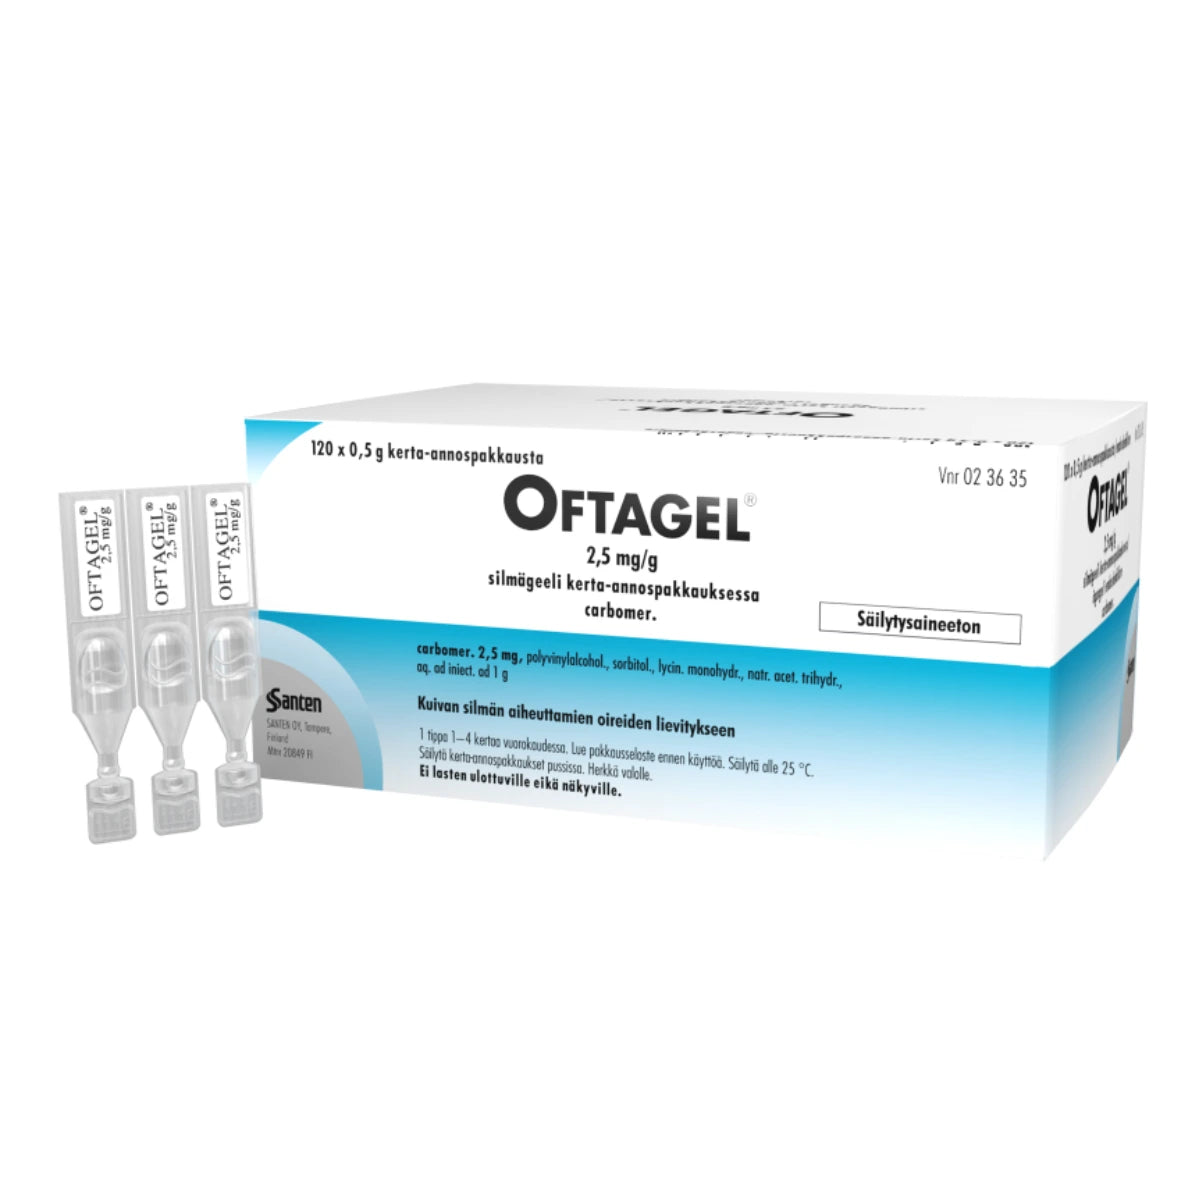 OFTAGEL 2,5 mg/g silmägeeli, kerta-annospakkaus 120x0,5 g säilytysaineeton